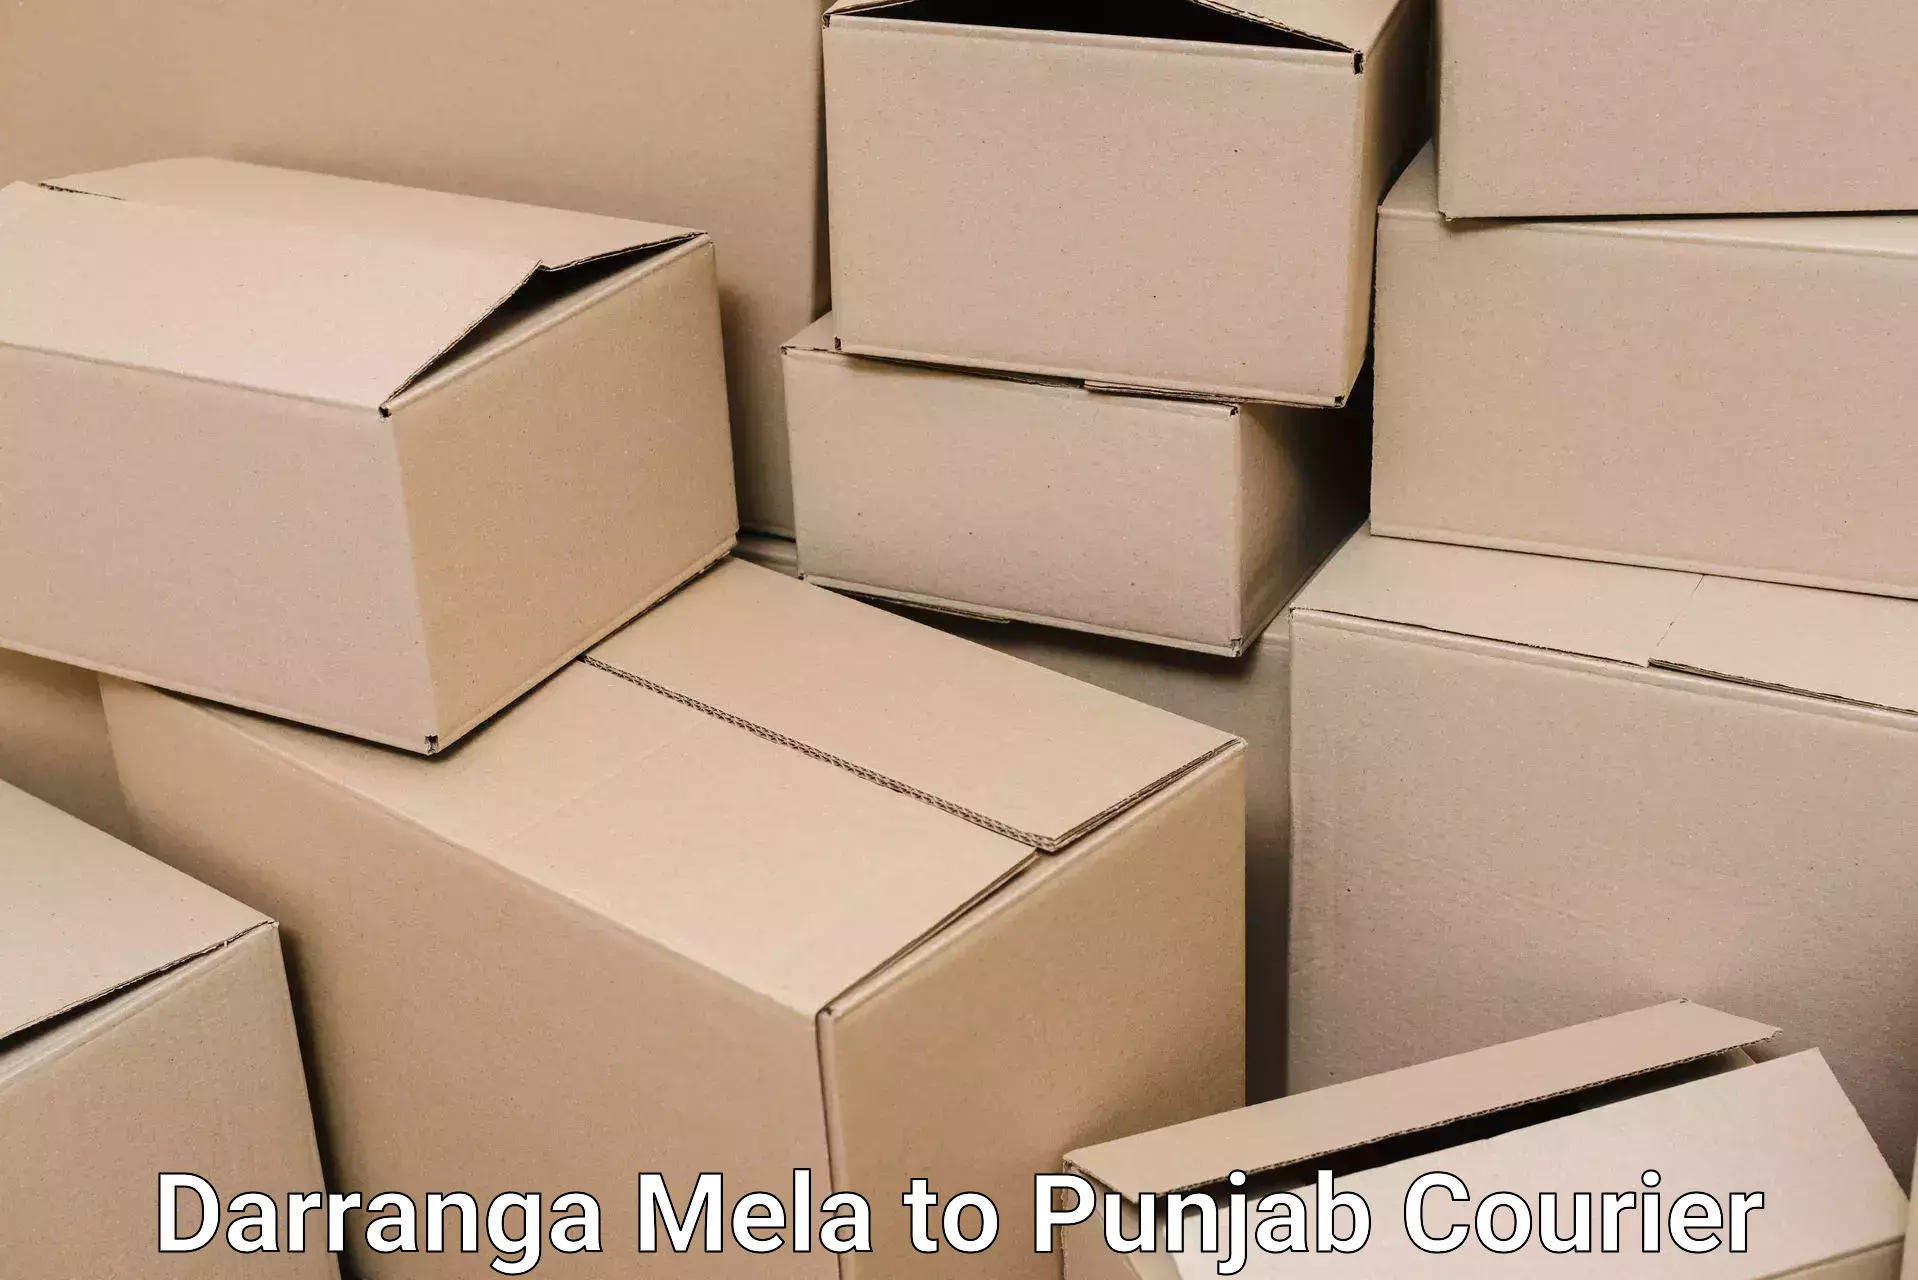 Efficient household moving in Darranga Mela to Punjab